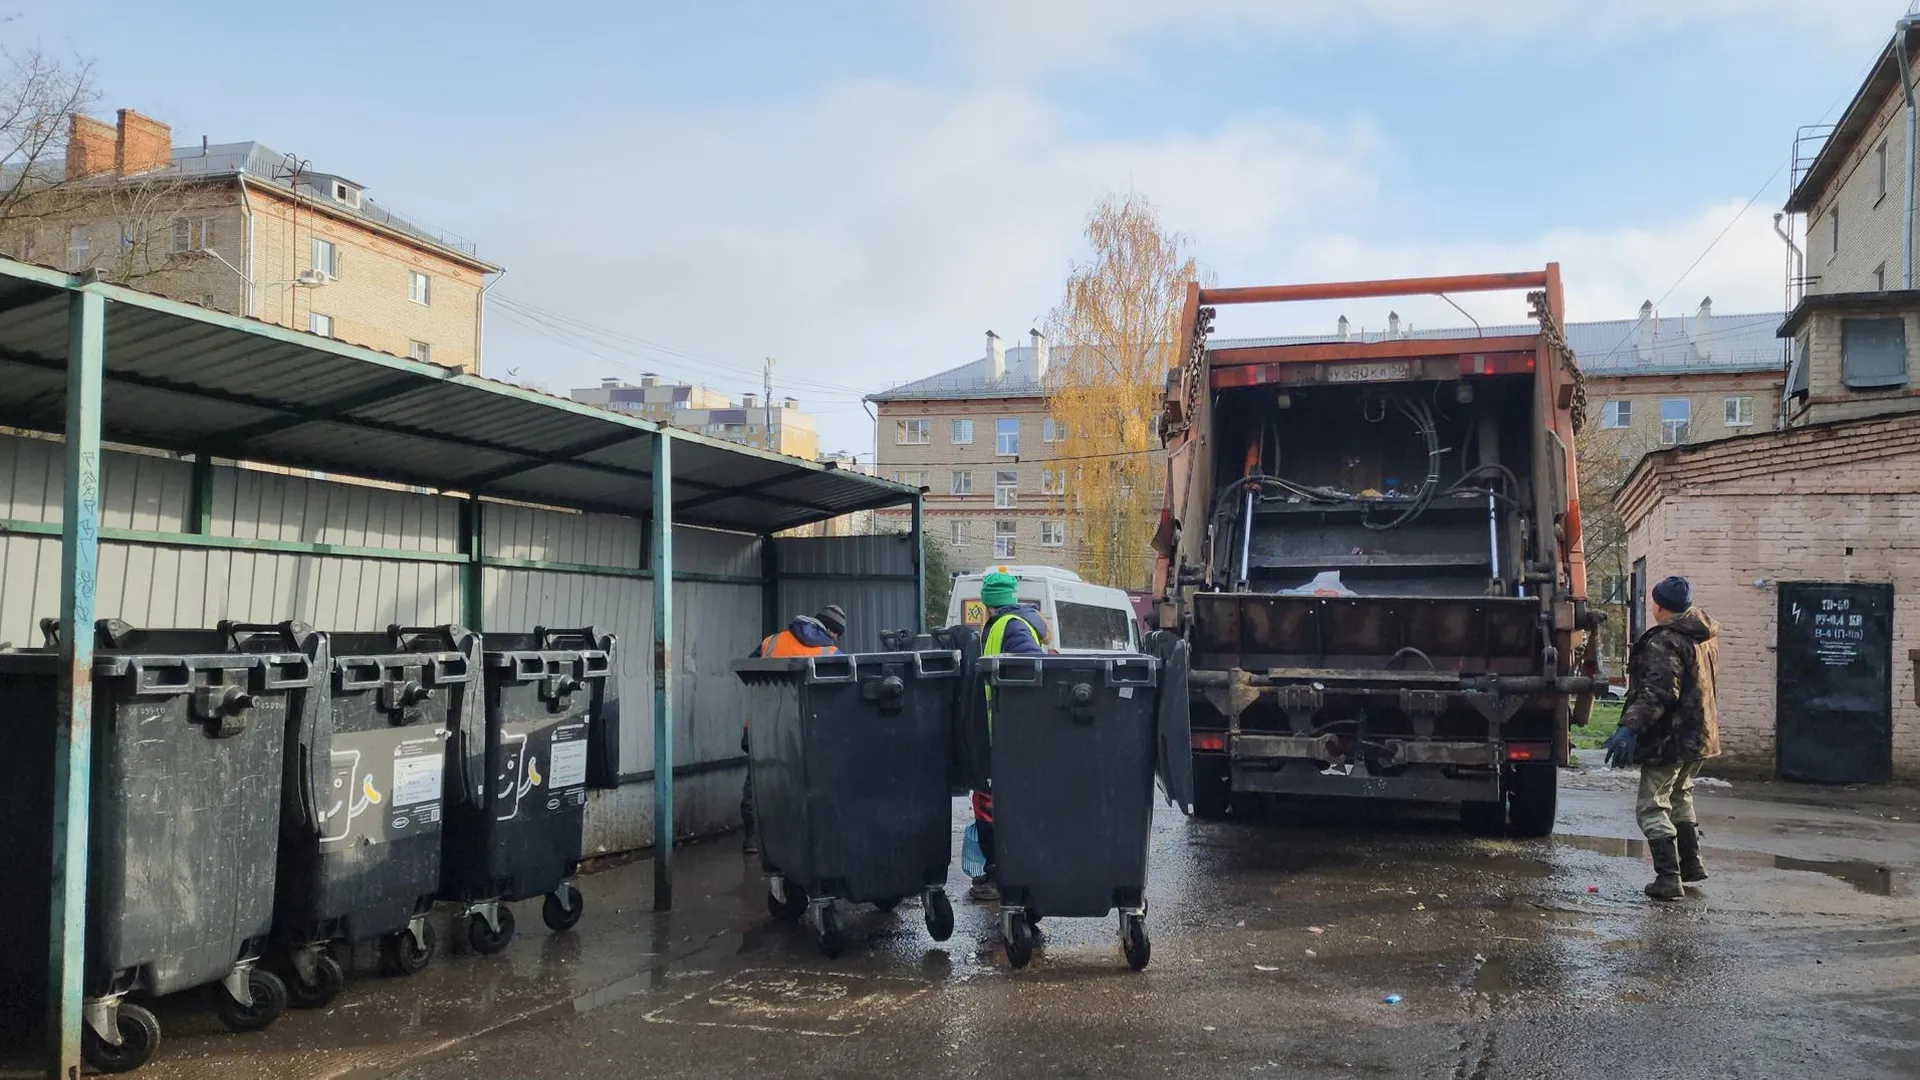 УК Подольска заменила баки на контейнерной площадке после обращения жителей